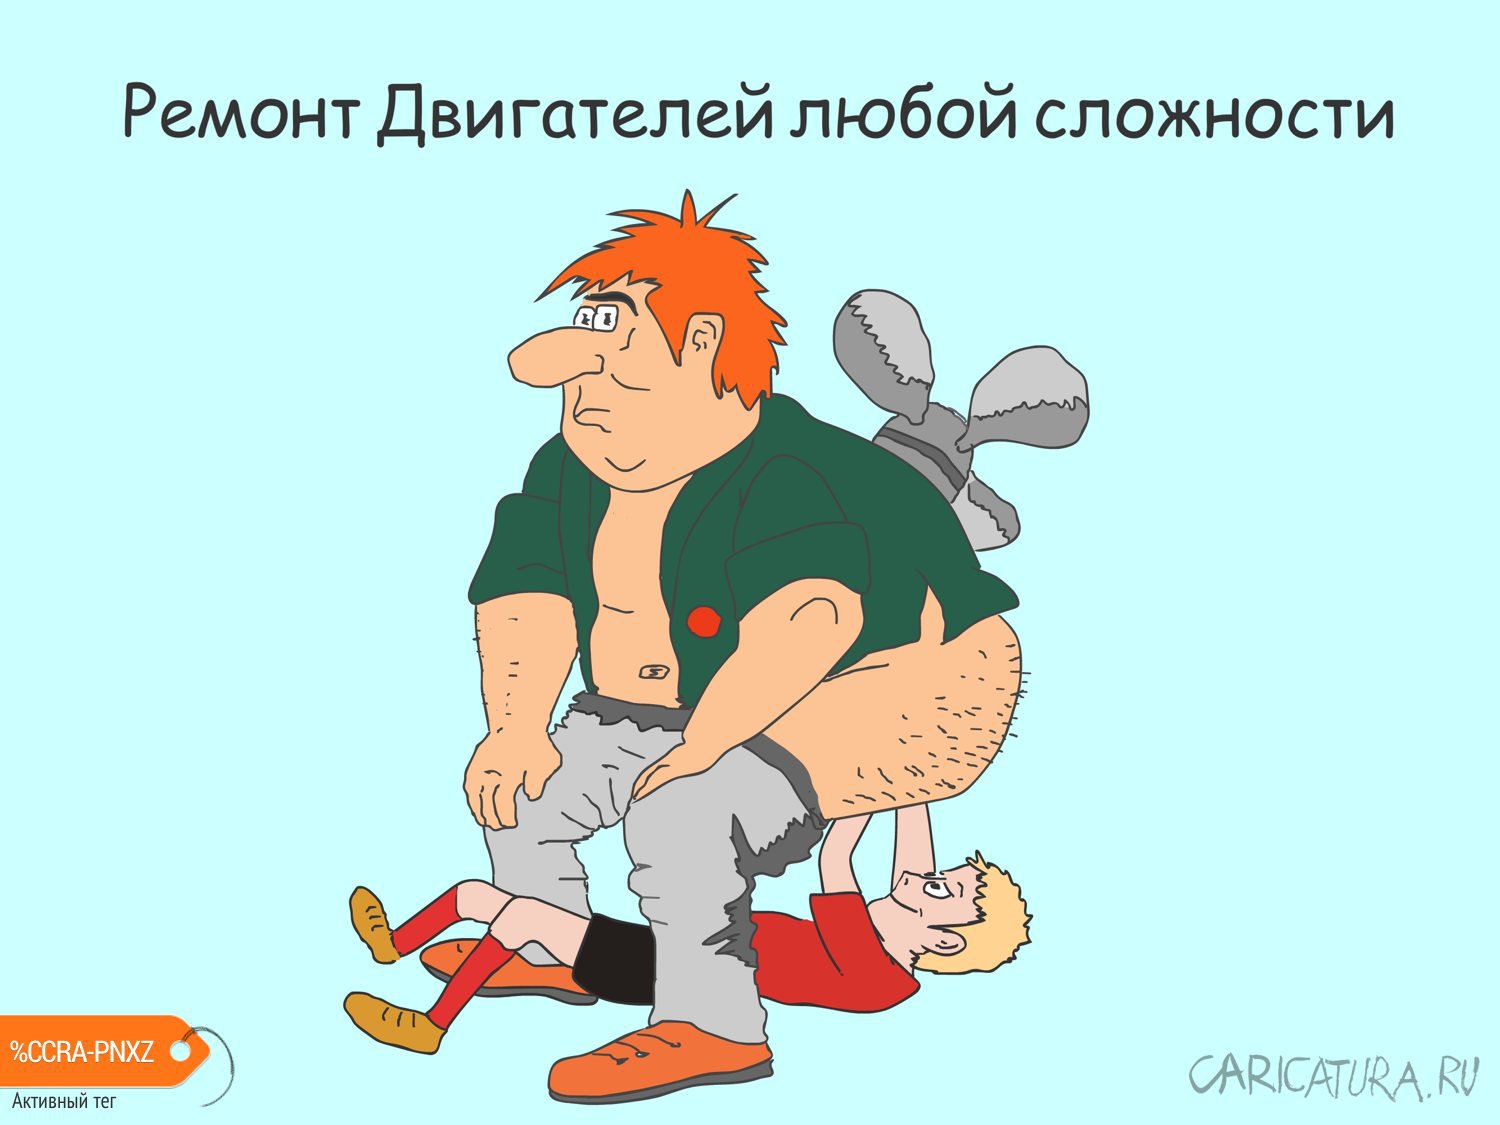 Карикатура "Ремонт двигателей любой сложности", Валерий Устинов